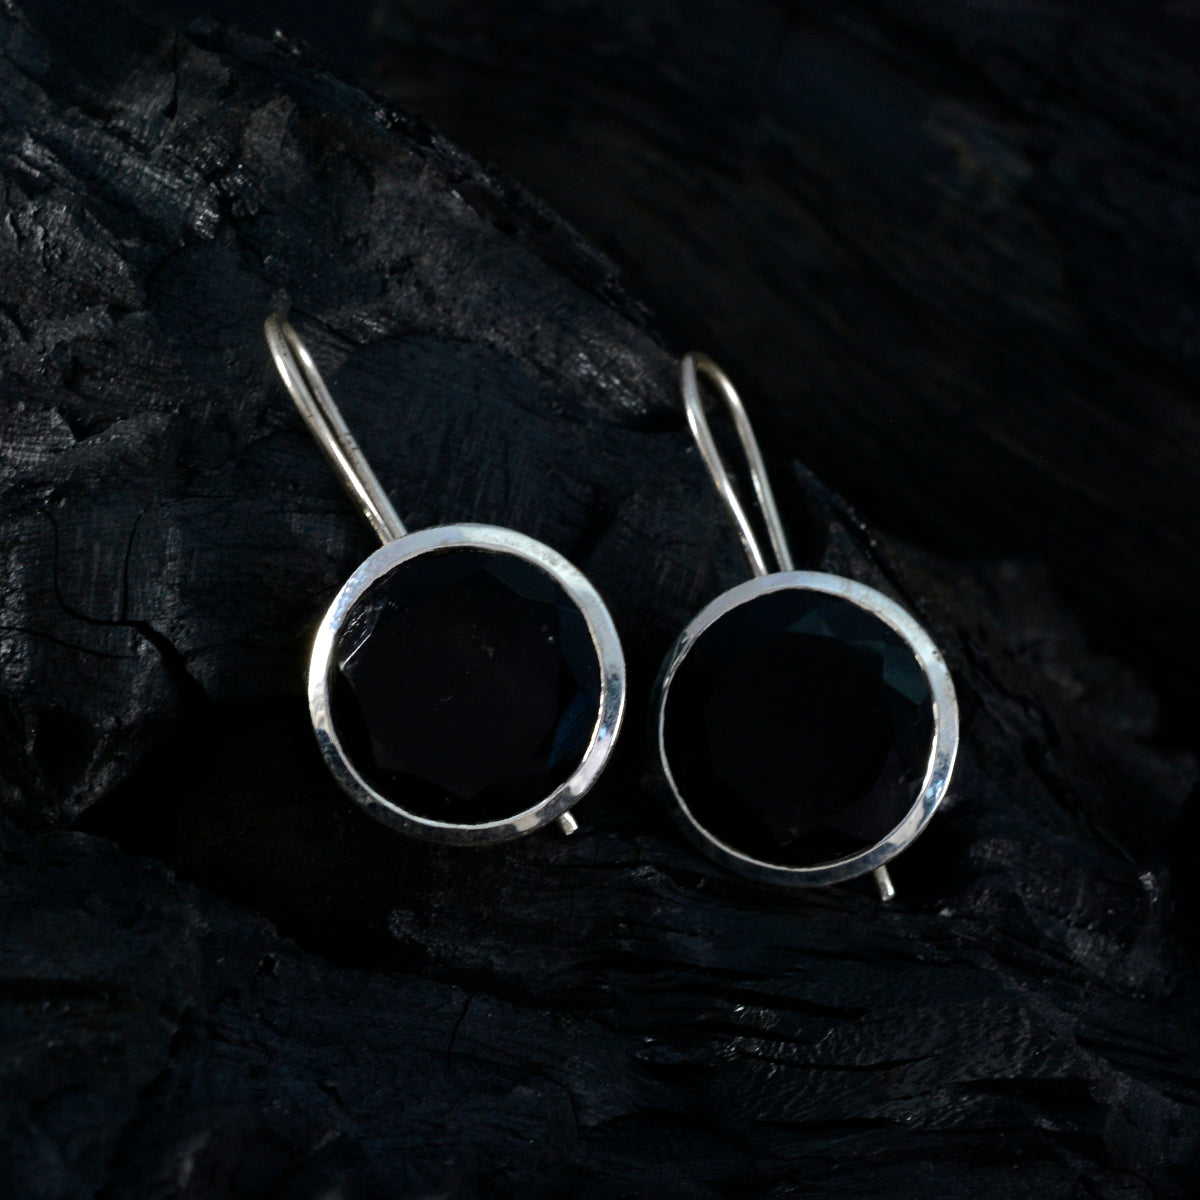 Riyo Himmlischer Sterlingsilber-Ohrring für Damen, schwarzer Onyx-Ohrring, Lünettenfassung, schwarzer Ohrring, baumelnder Ohrring